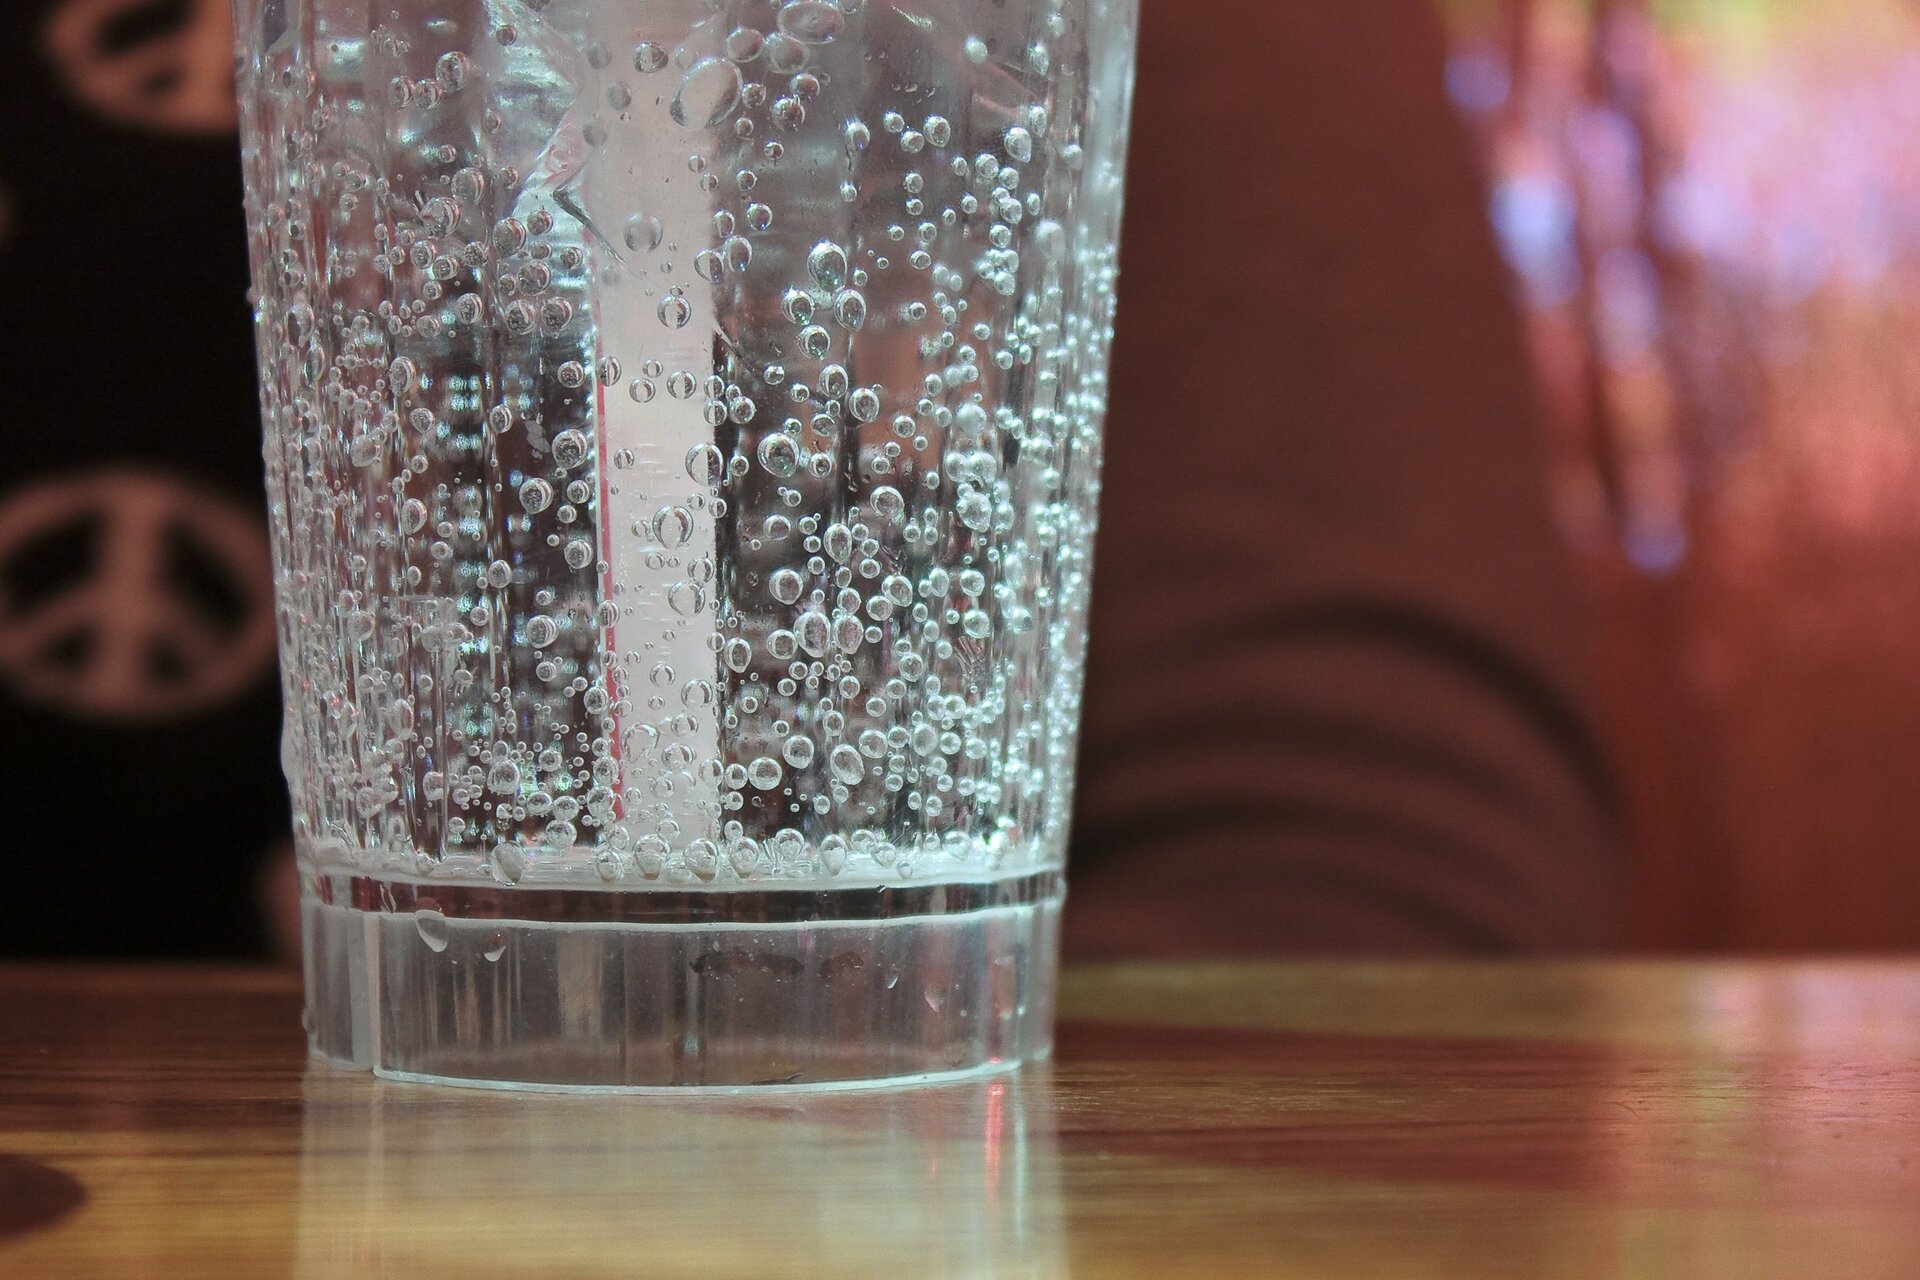 Zdjęcie przestawia stojącą na stole szklankę wypełnioną wodą gazowaną. Woda jest pełna pęcherzyków gazu. Wewnątrz szklanki znajduje się słomka. 